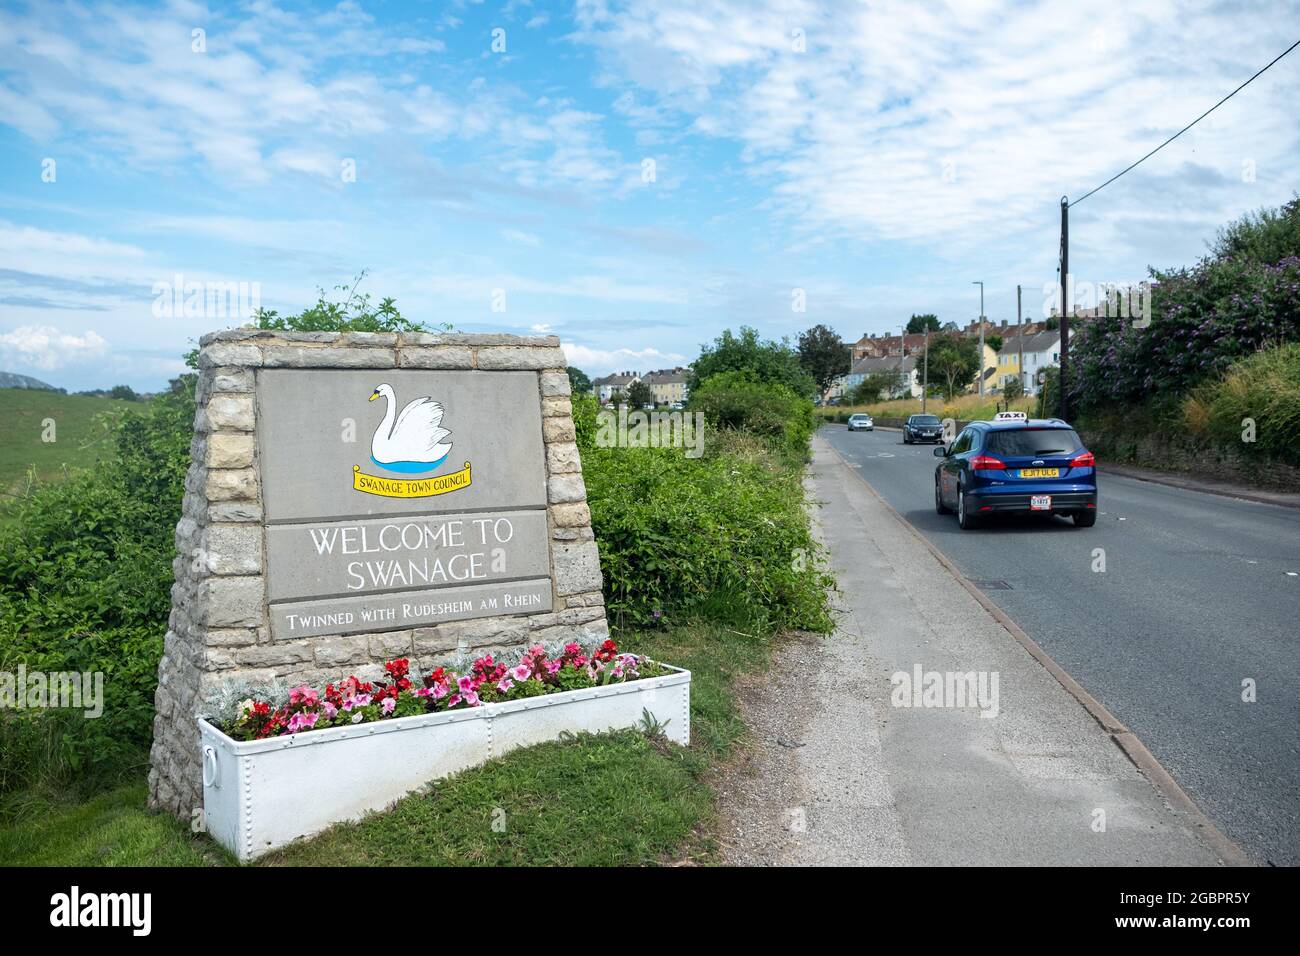 Dorset- Reino Unido: Bienvenido a Swanage signo en la carretera que conduce a la ciudad del lado del mar en el sur de Inglaterra Foto de stock